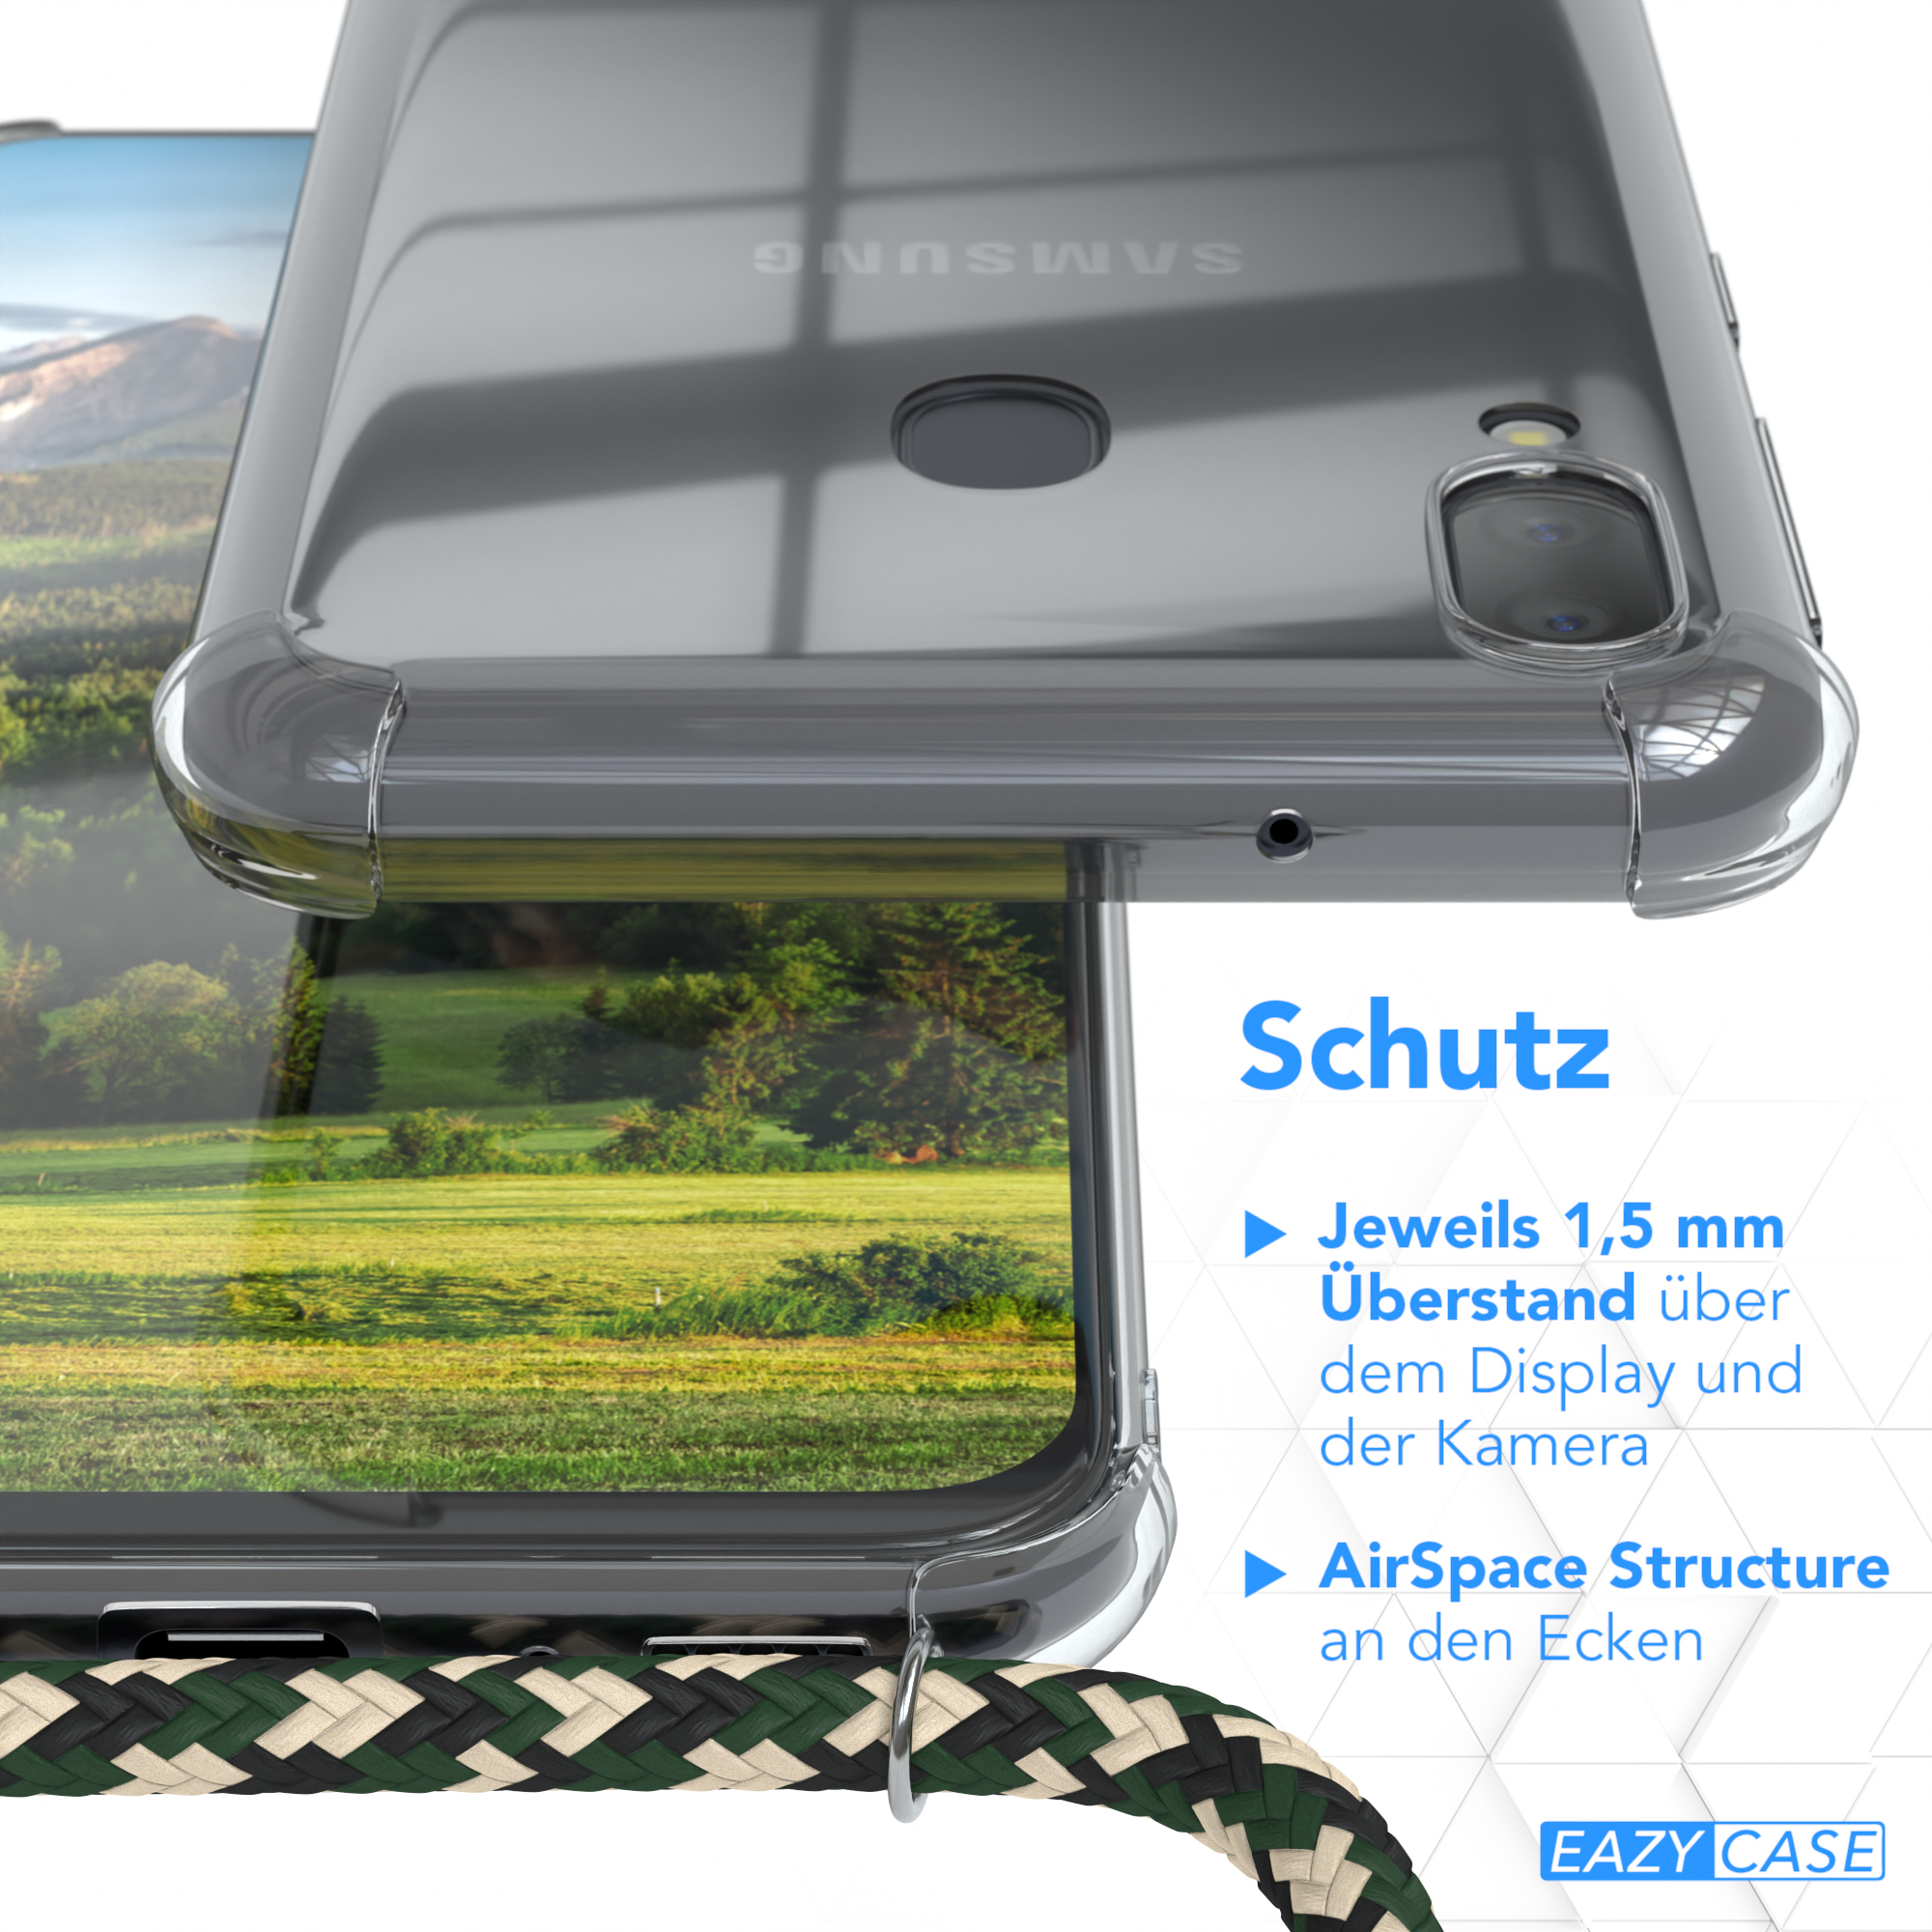 Galaxy Umhängeband, mit Samsung, Cover Clips Camouflage / Clear Gold EAZY CASE Grün M20, Umhängetasche,